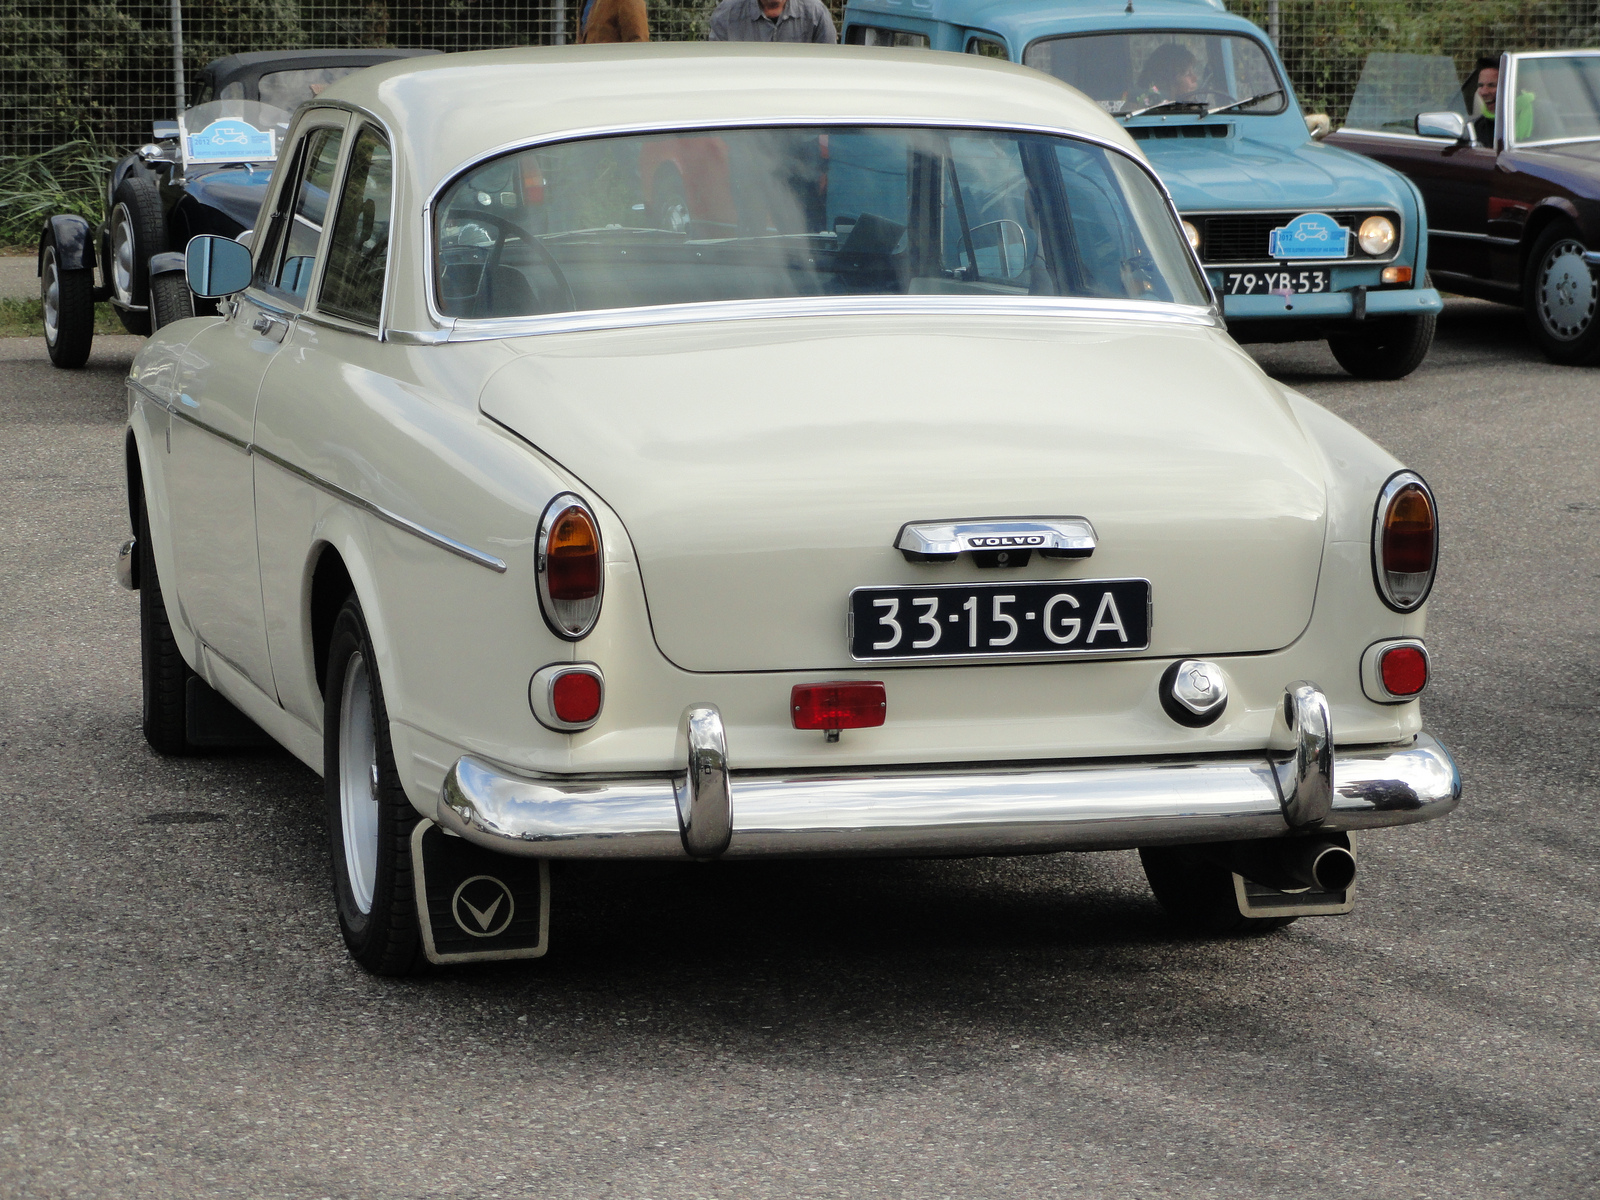 33-15-GA Volvo 121 - Nationaal Oldtimer Festival 2012 | Flickr ...